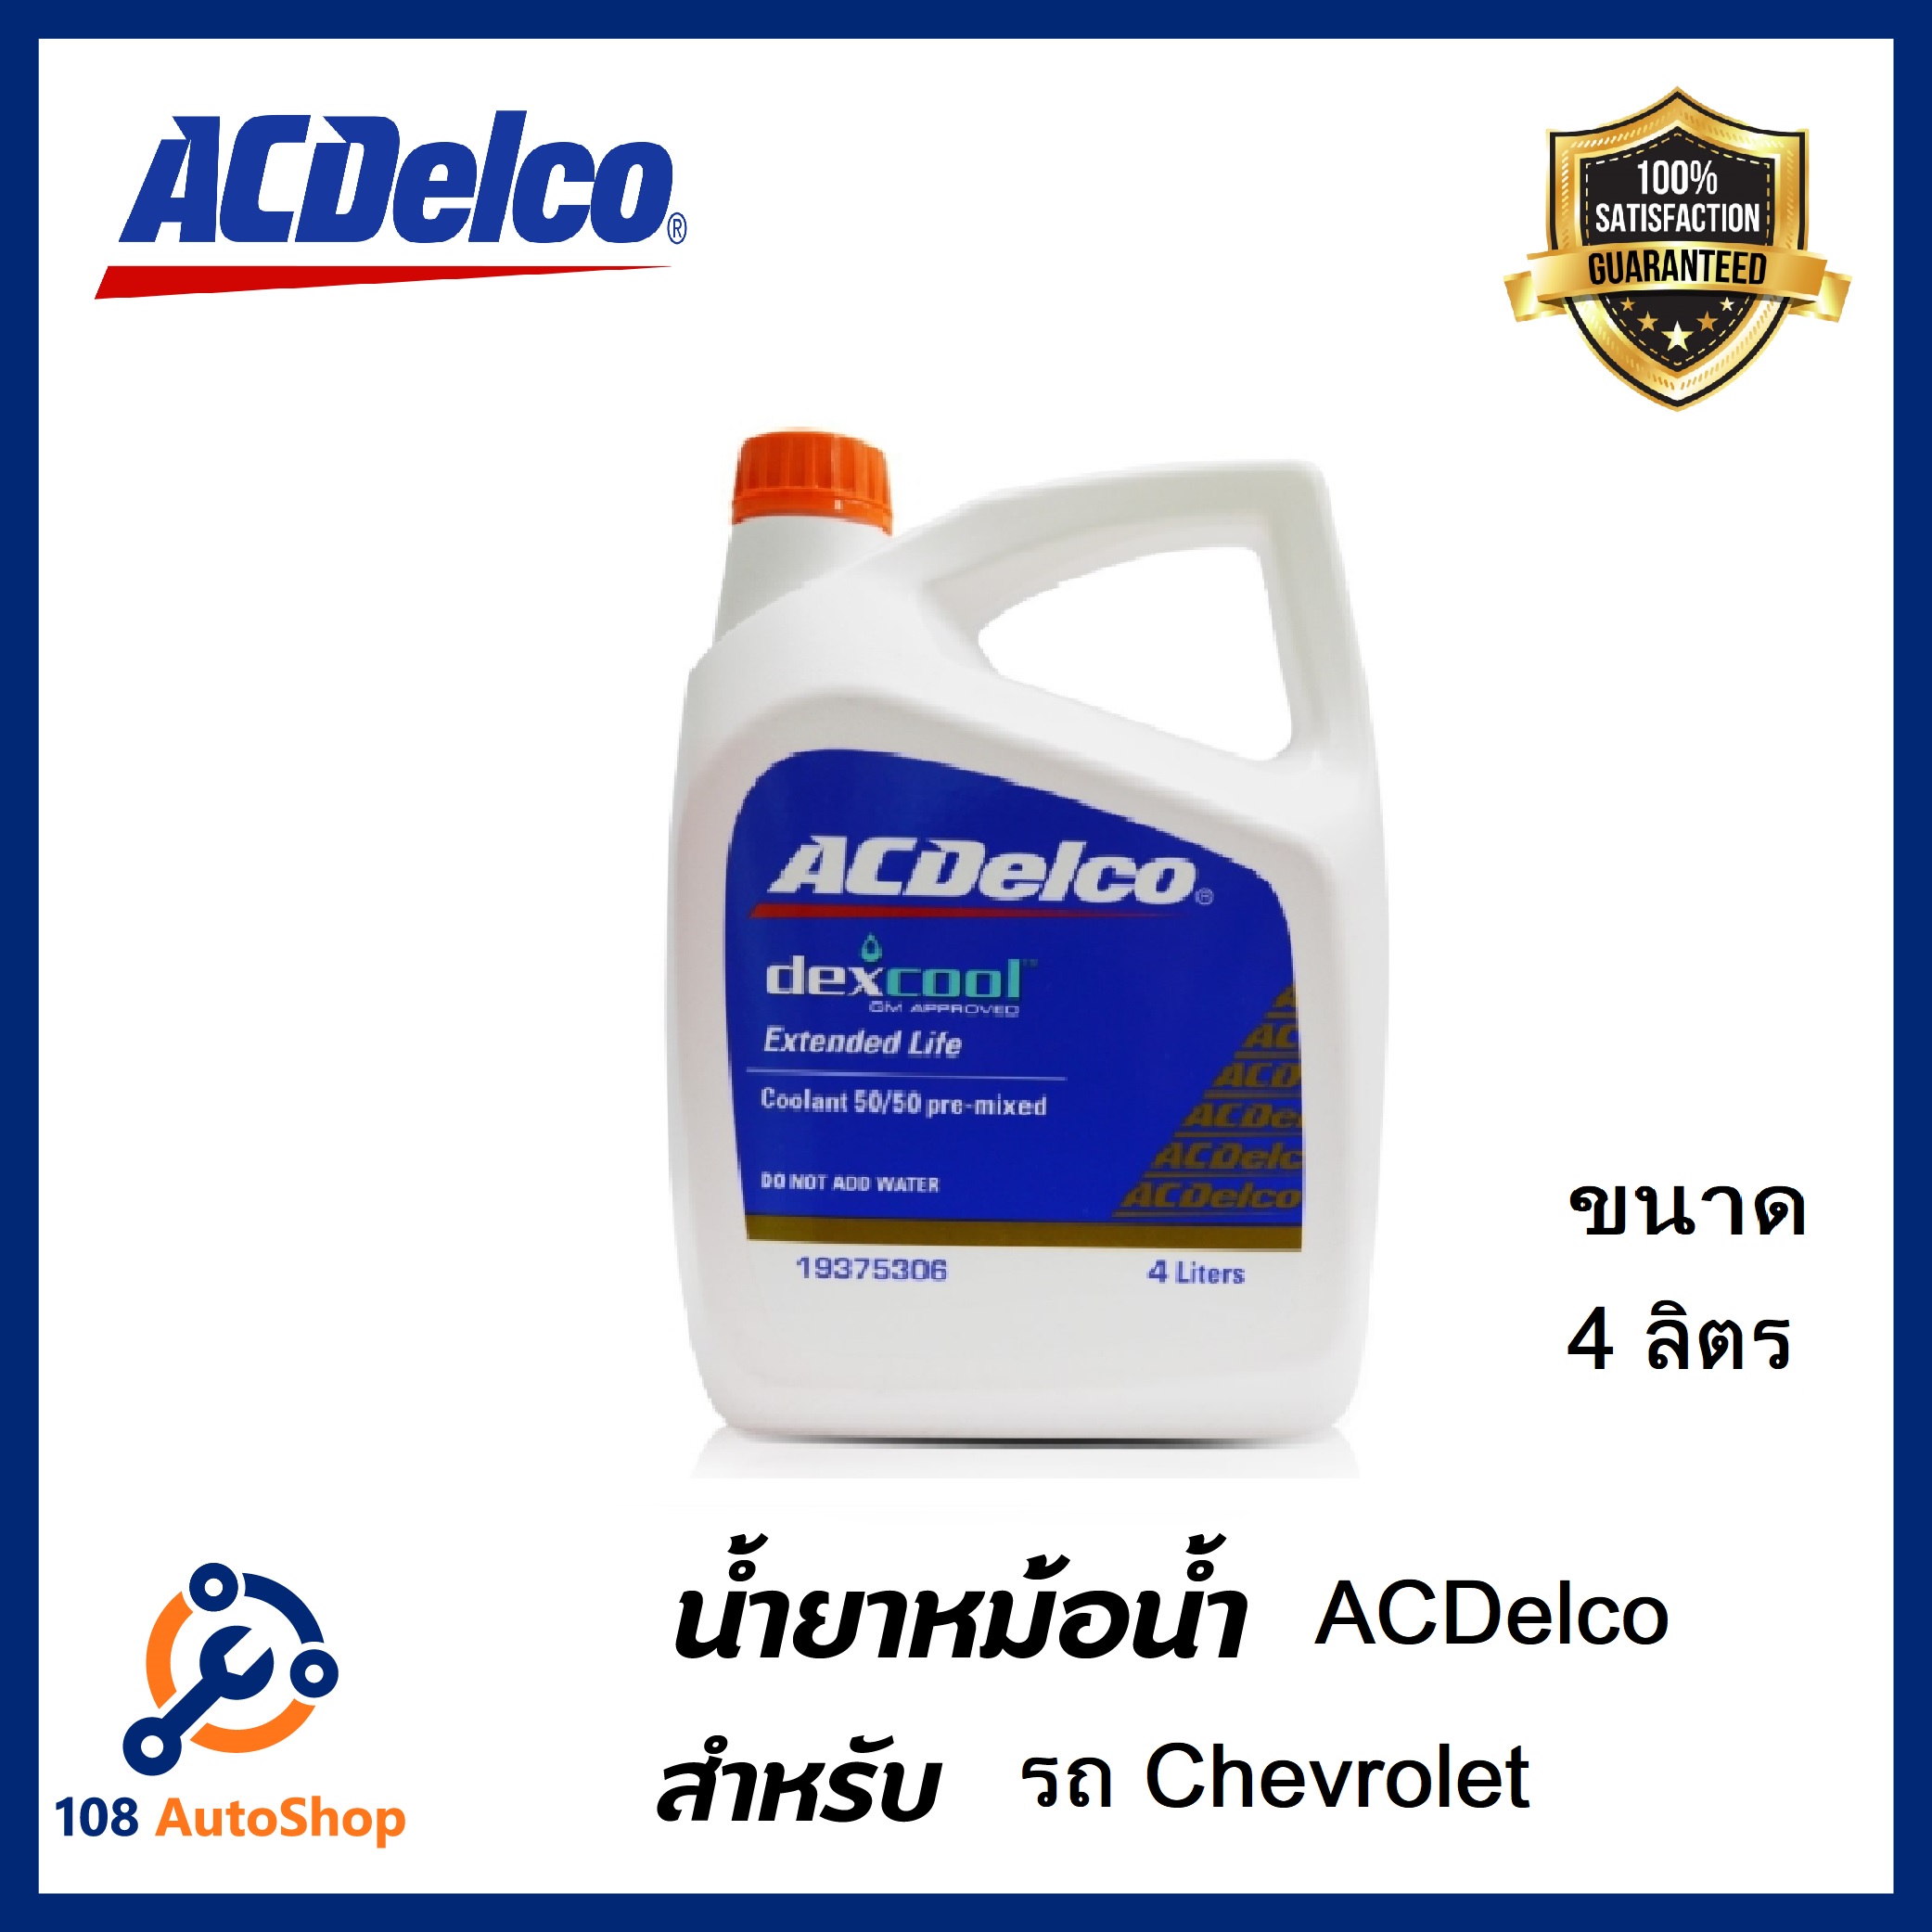 น้ำยาหม้อน้ำ Acdelco Dex cool 50/ ขนาด 4ลิตร สำหรับ รถ Chevrolet โดยเฉพาะ (ไม่ต้องผสมน้ำ)